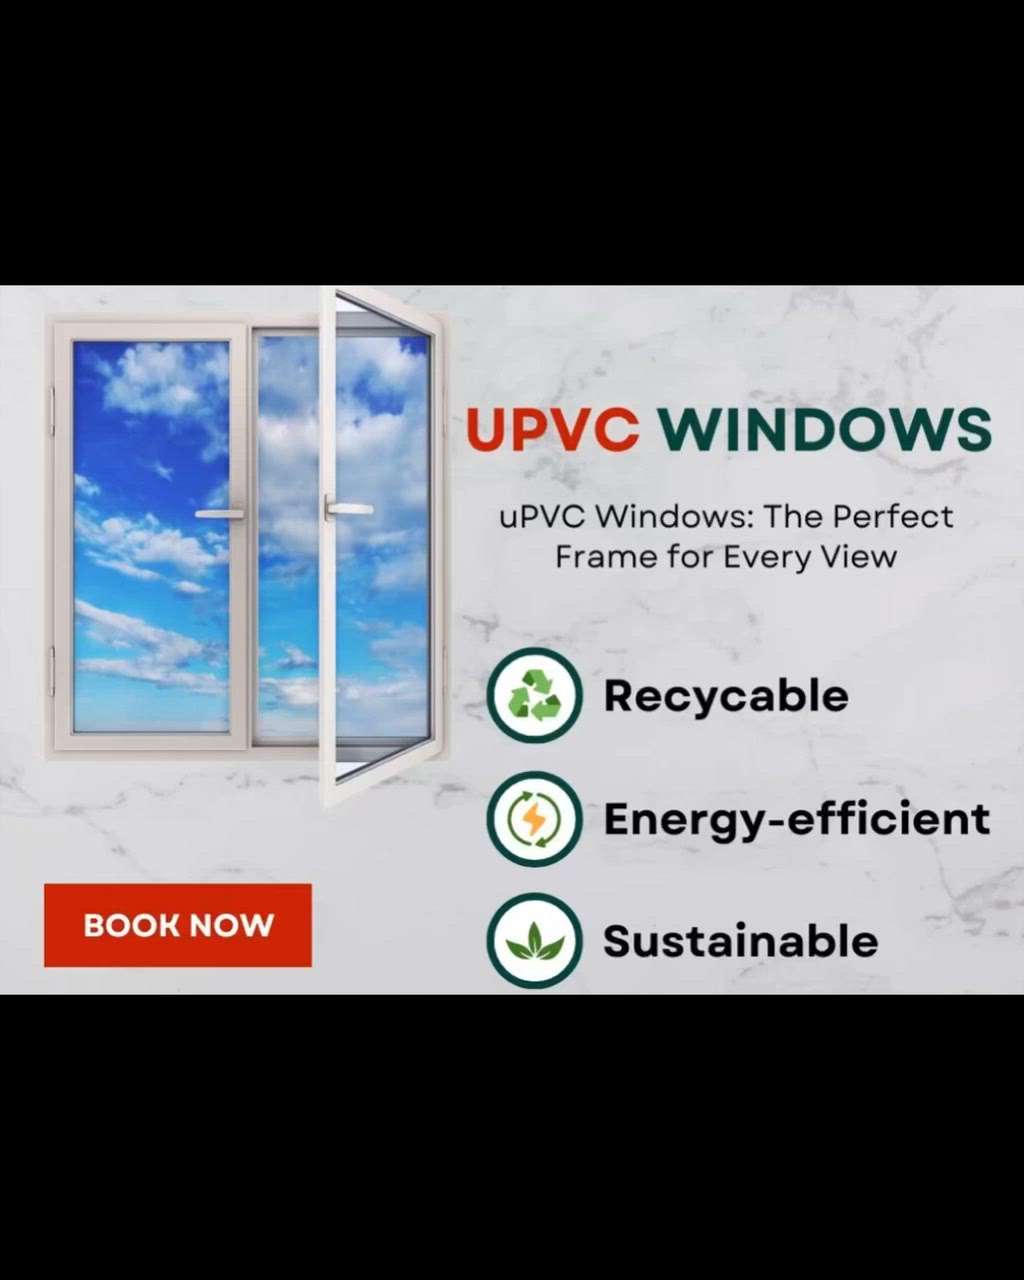 UPVC വാതിലുകളും ജനലുകളും…കൂടുതൽ അറിയാം…

creatorsofkolo #upvc #doors #windows #woodalternatives